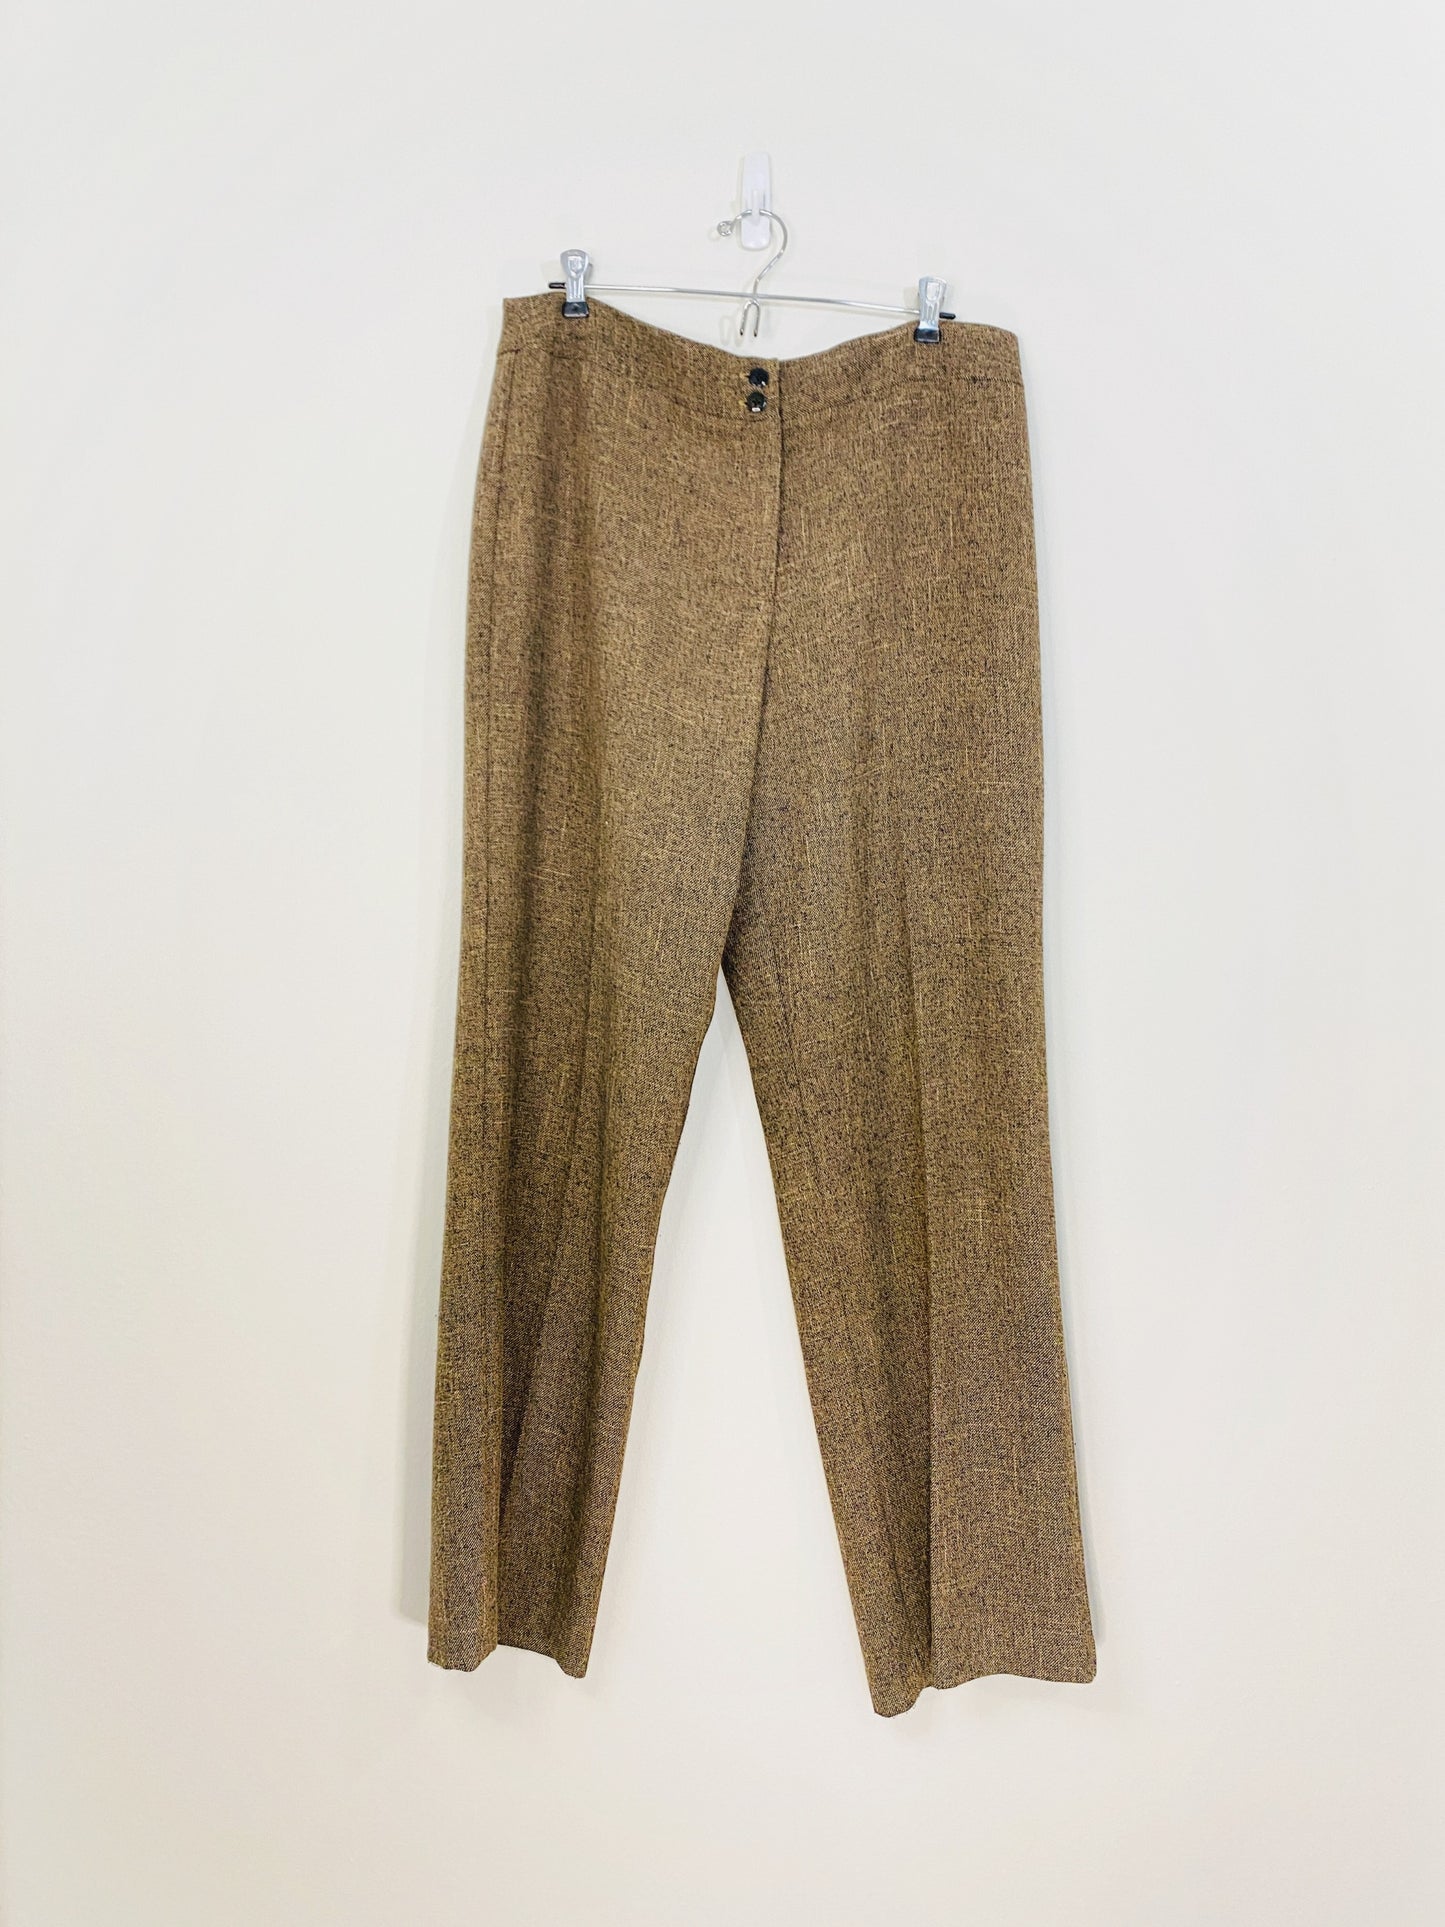 Brown Tweed Pants (XL)